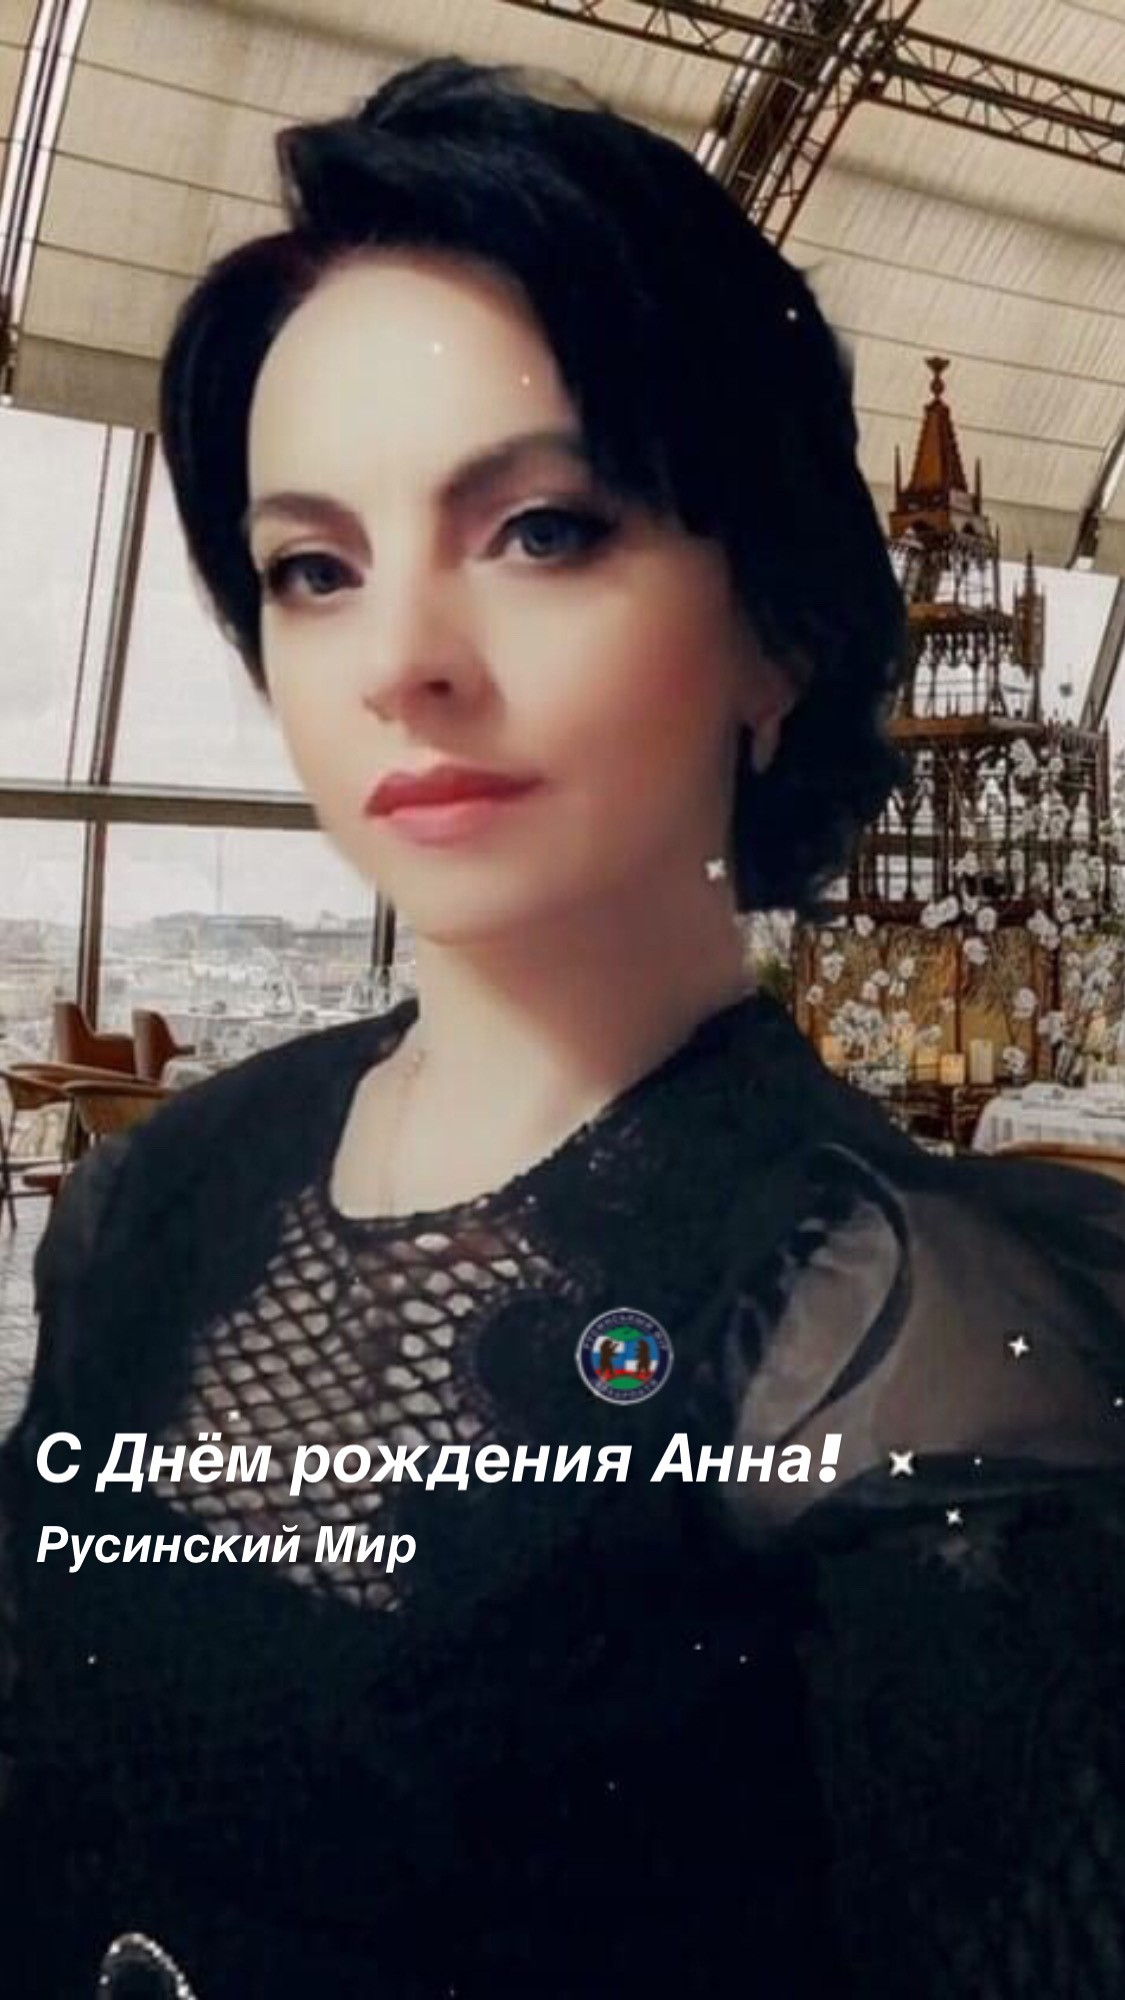 Сегодня свой День рождения празднует молодая русинская поэтесса Аня Цірик. Коллектив сайта «Русинский Мир» искренне поздравляет Анну!